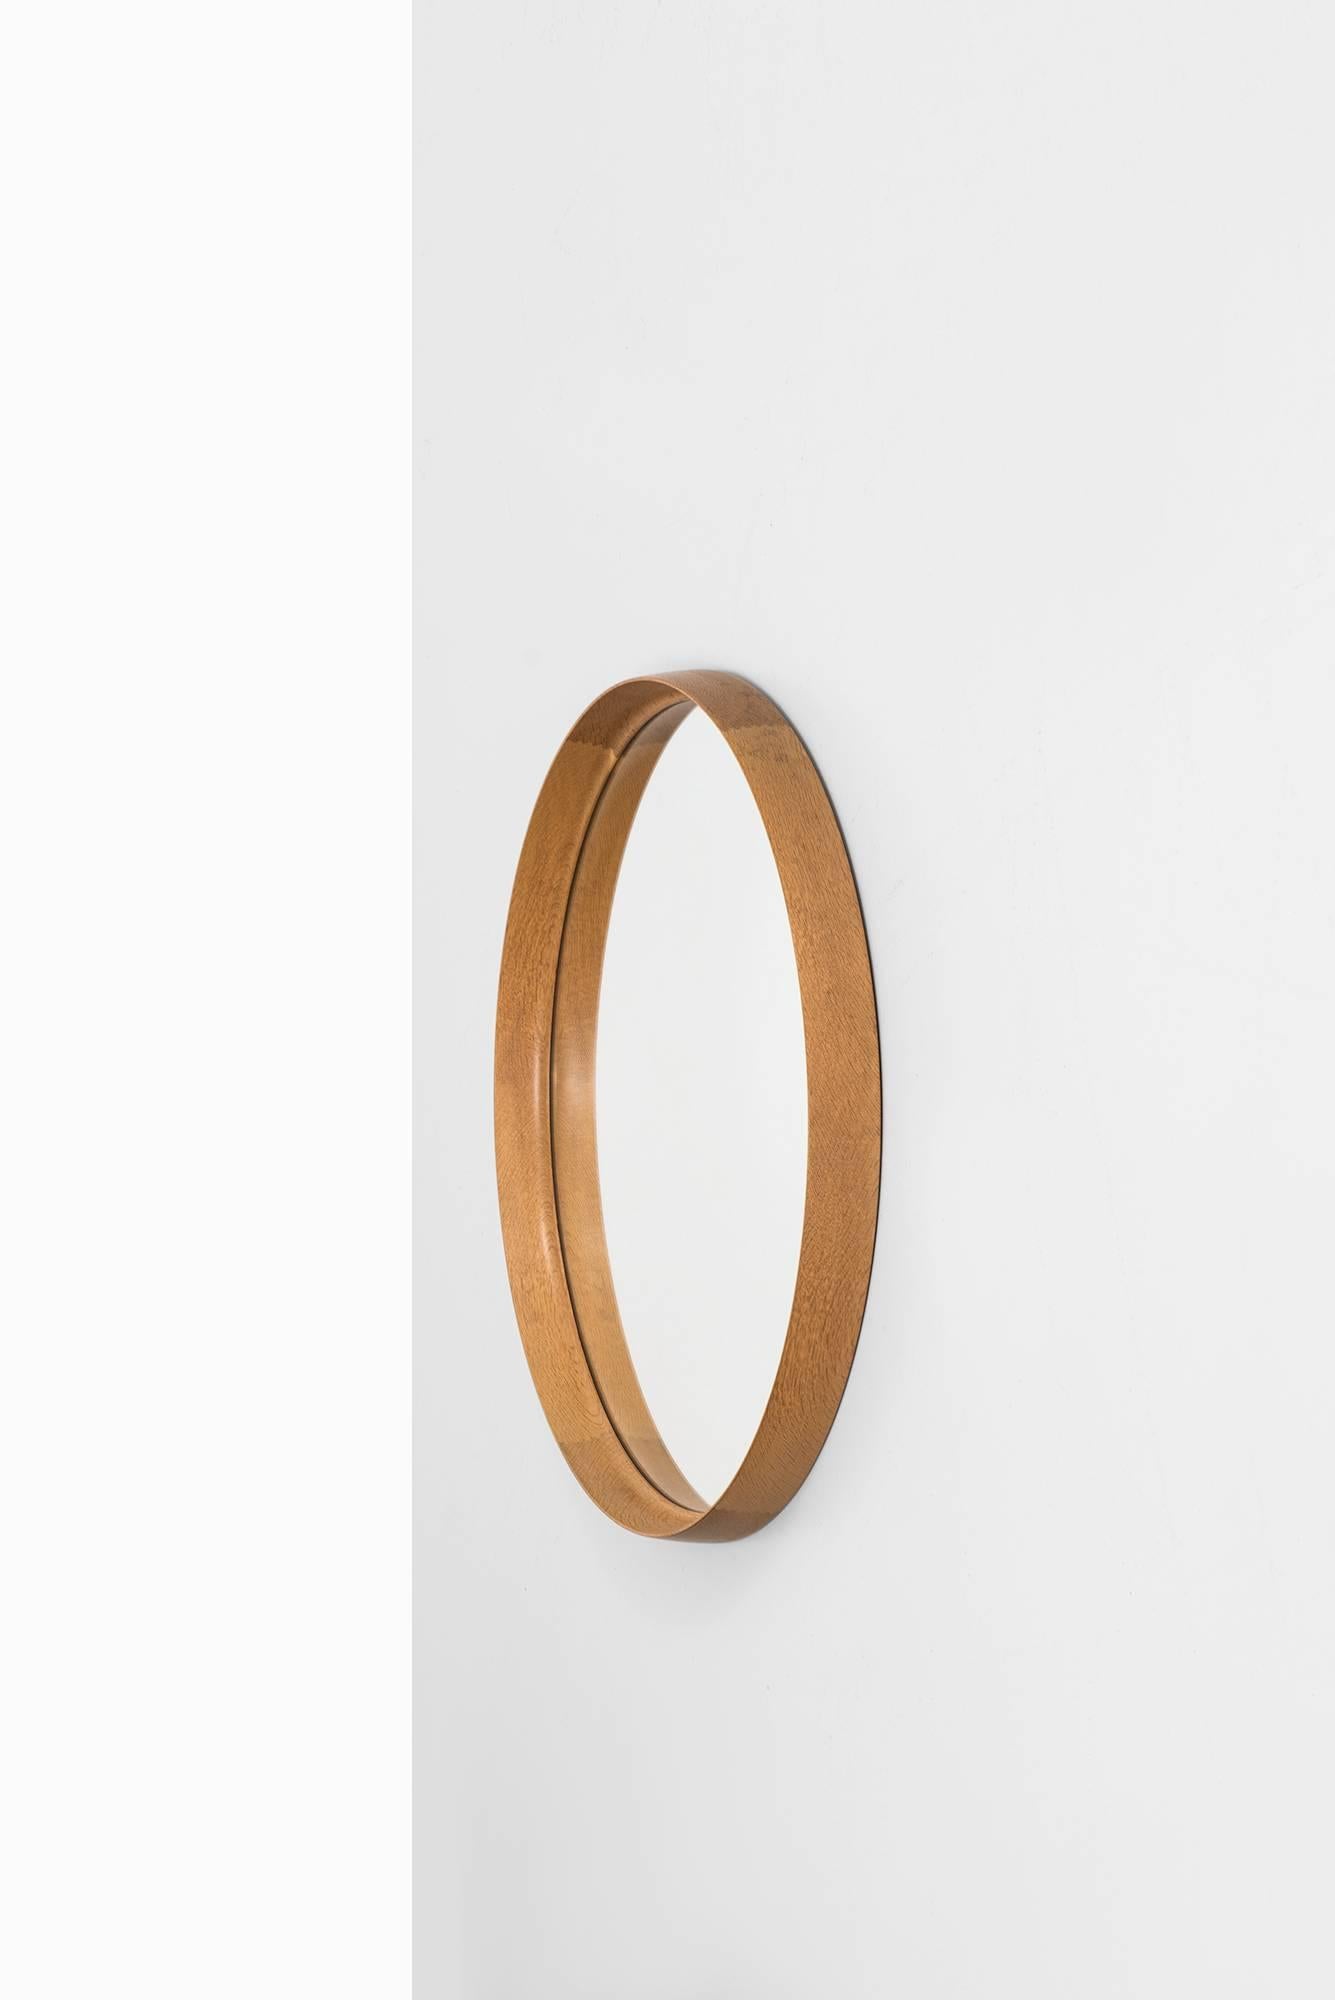 Scandinavian Modern Uno & Östen Kristiansson Large Round Mirror by Luxus in Sweden